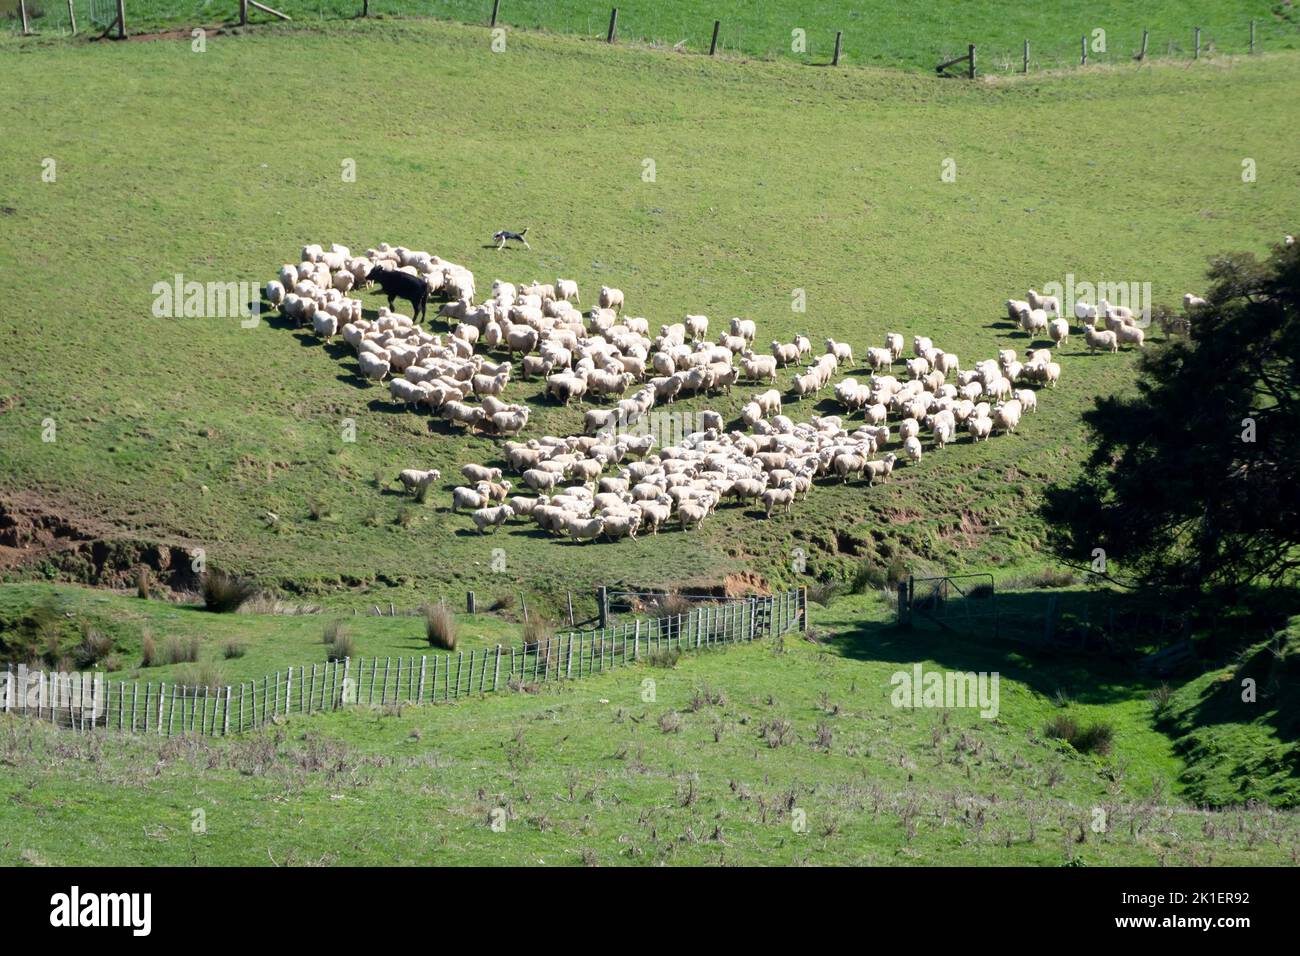 Sheep dog herding sheep, Pohangina Valley, Manawatu, North Island, New Zealand Stock Photo